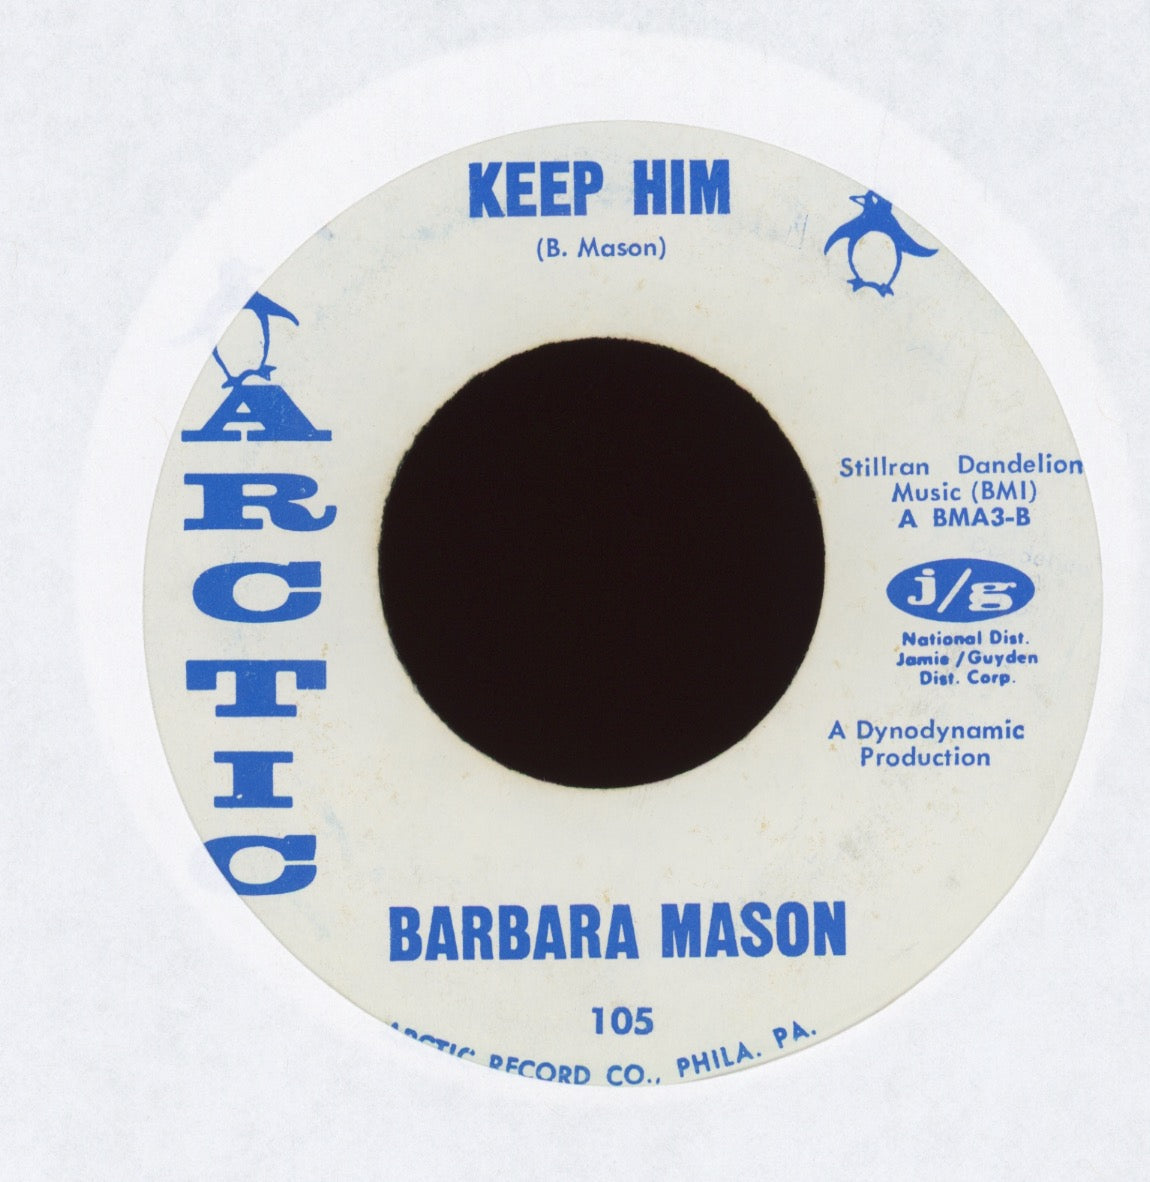 Barbara Mason - Yes, I'm Ready on Arctic Soul 45